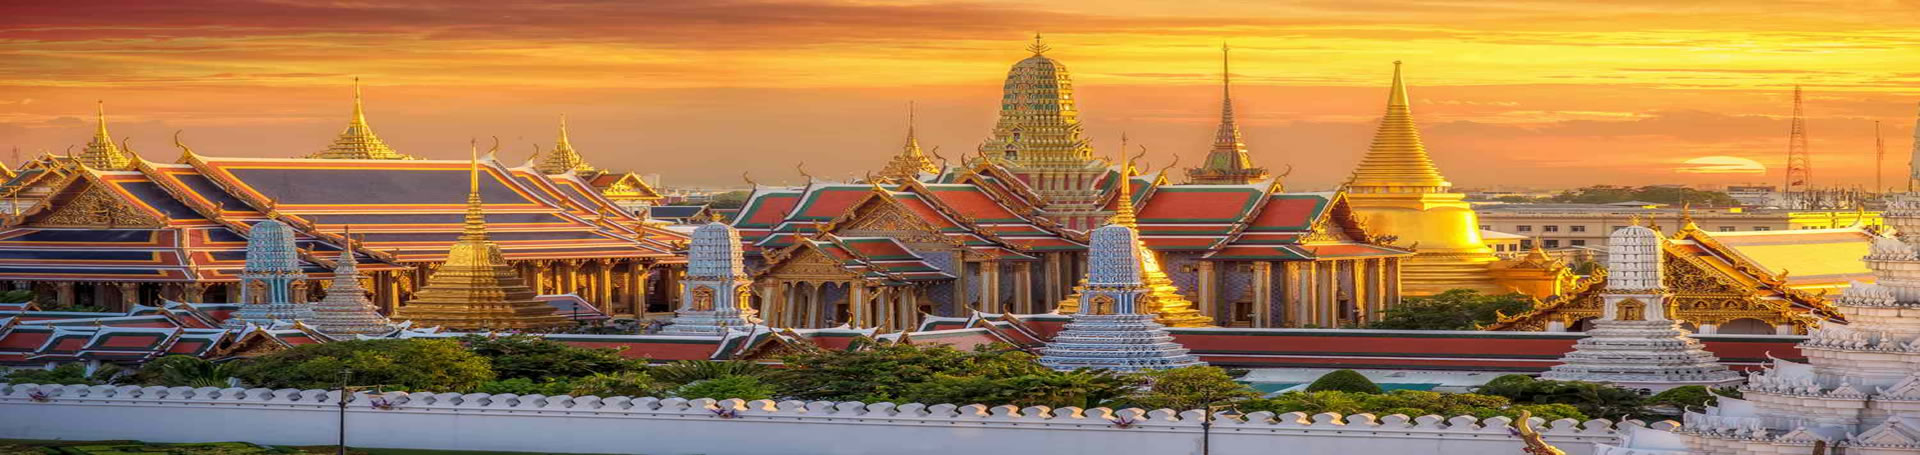 نمای کاخ بزرگ بانکوک